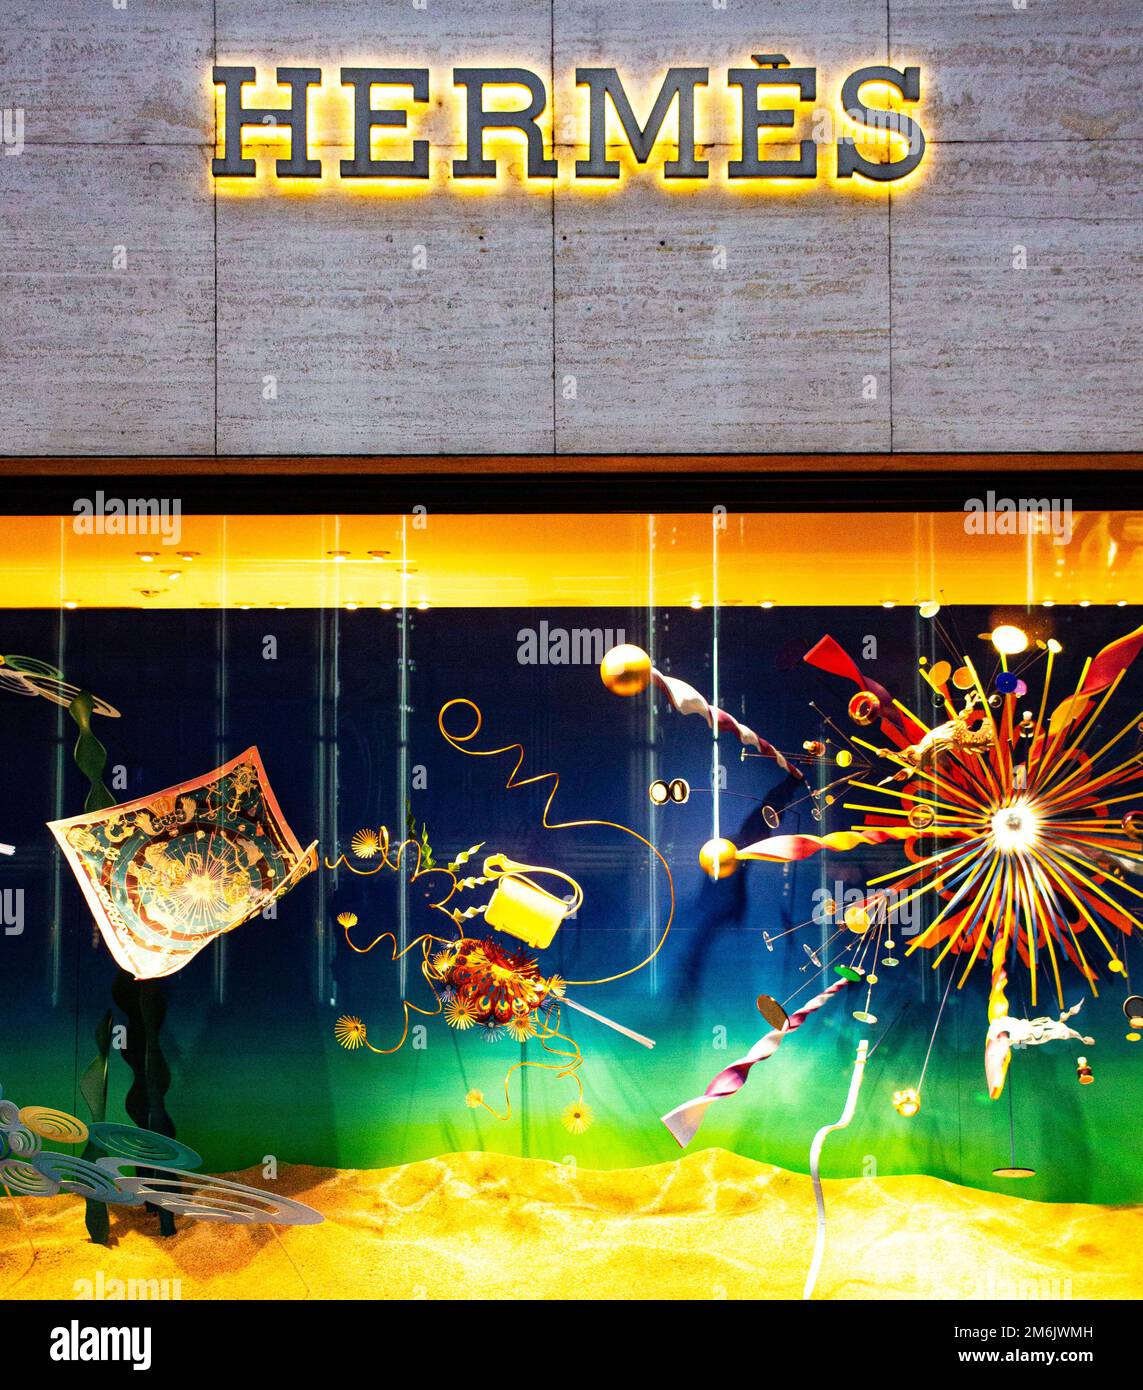 Hermes Storefront St Tropez Boutique Store Sign Photo Cote 